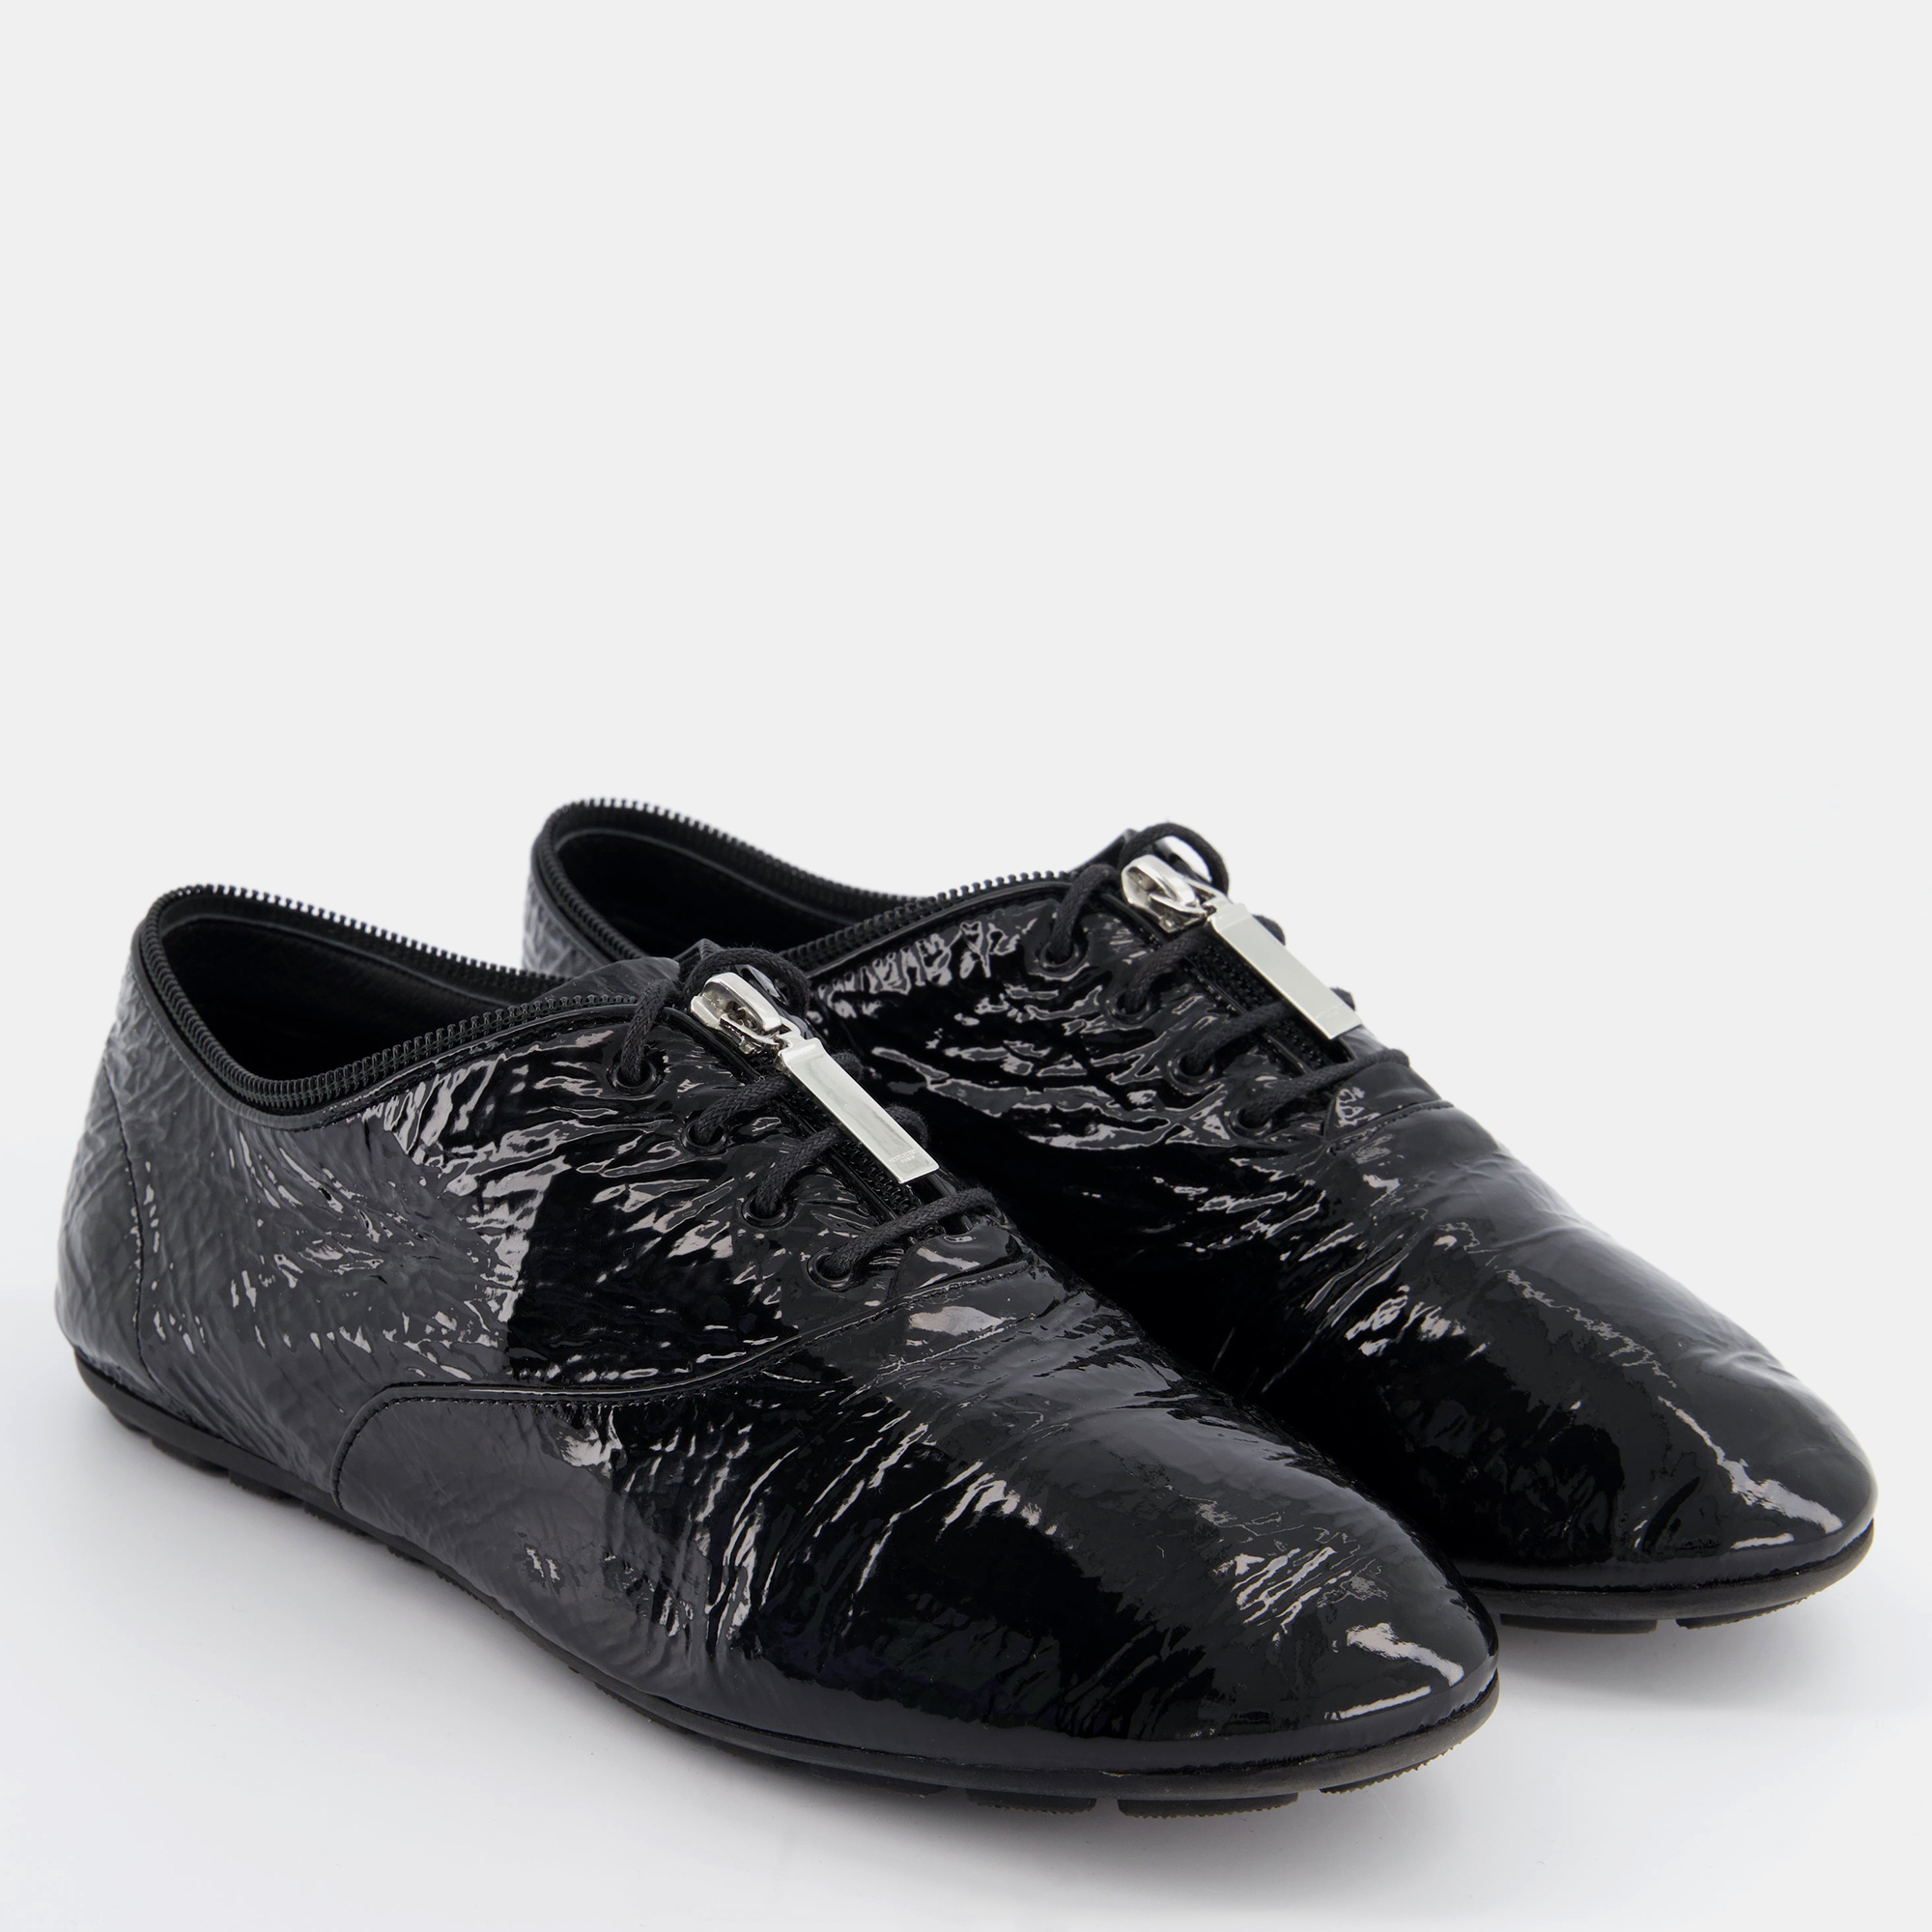 

Saint Laurent Black Patent Lace up Shoes with Zip Detail Size EU